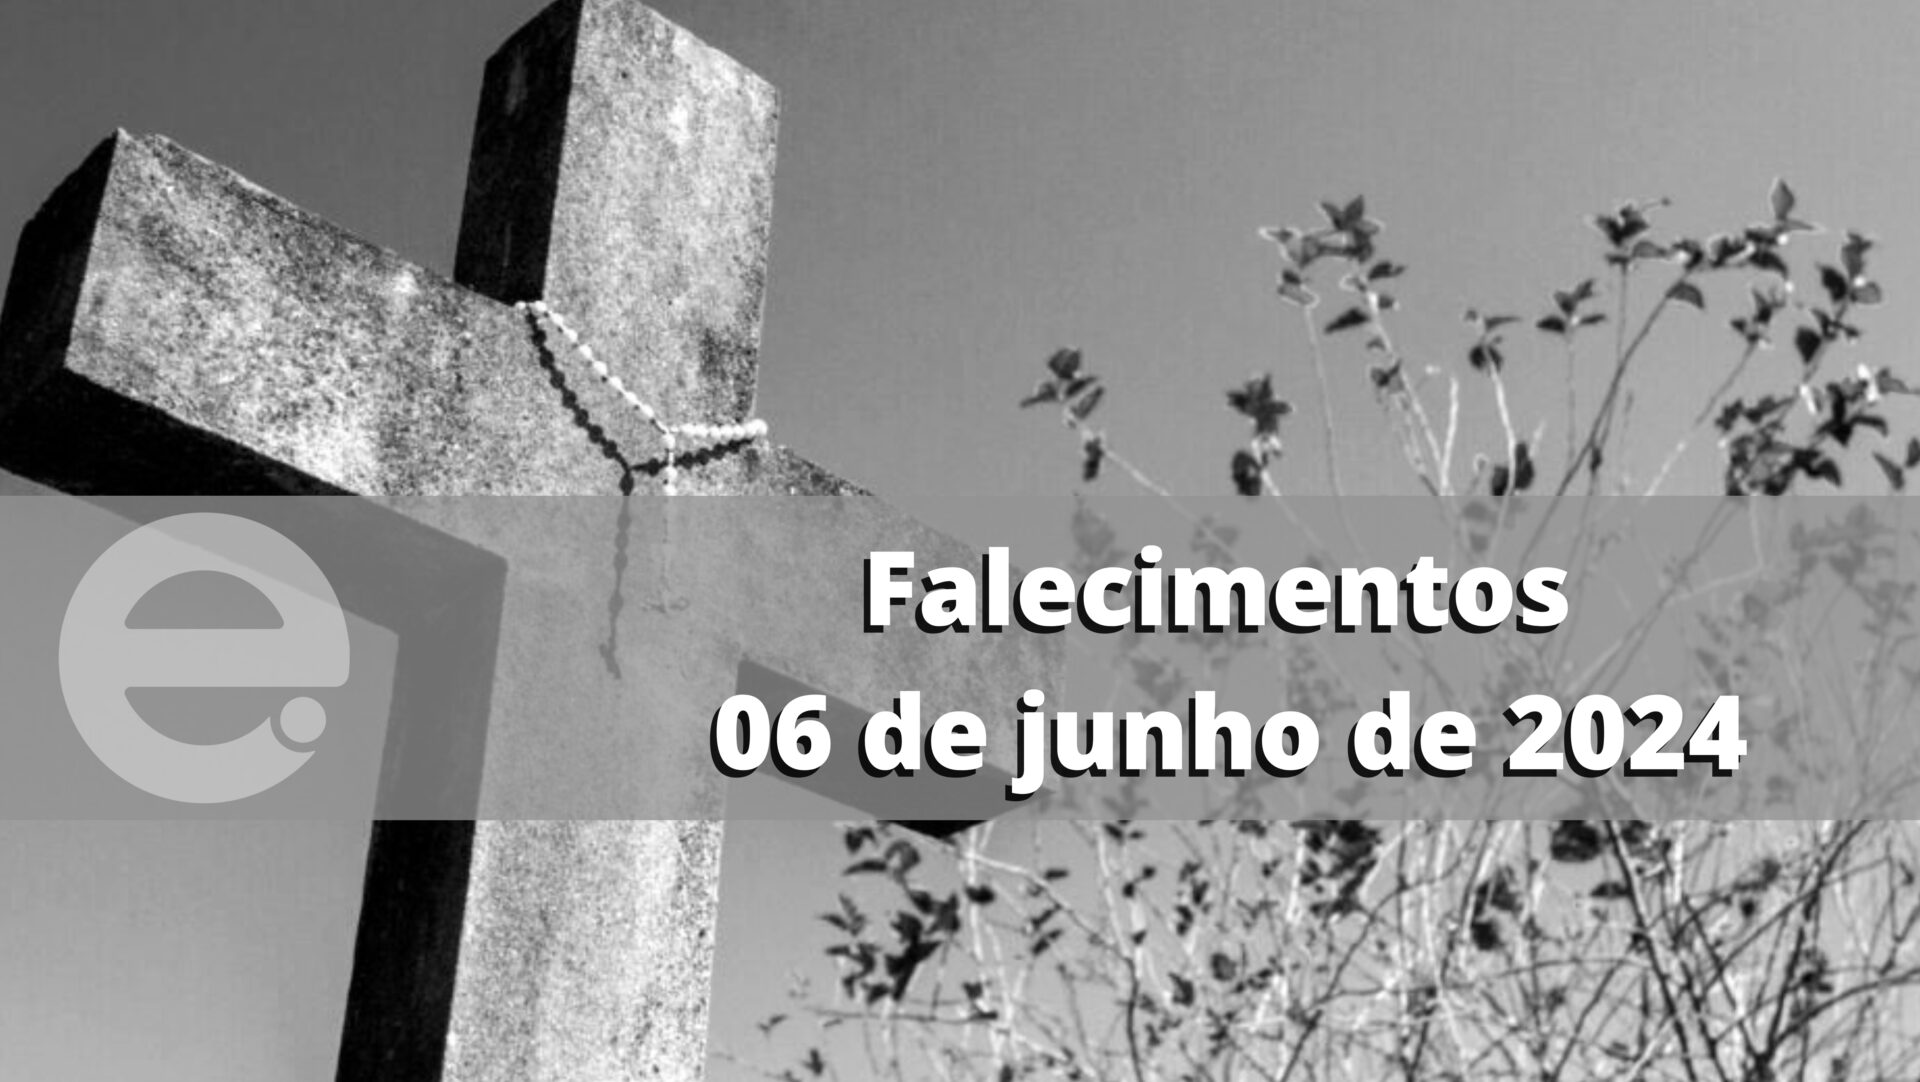 Confira os falecimentos desta quinta-feira, 06 de junho de 2024, em Limeira